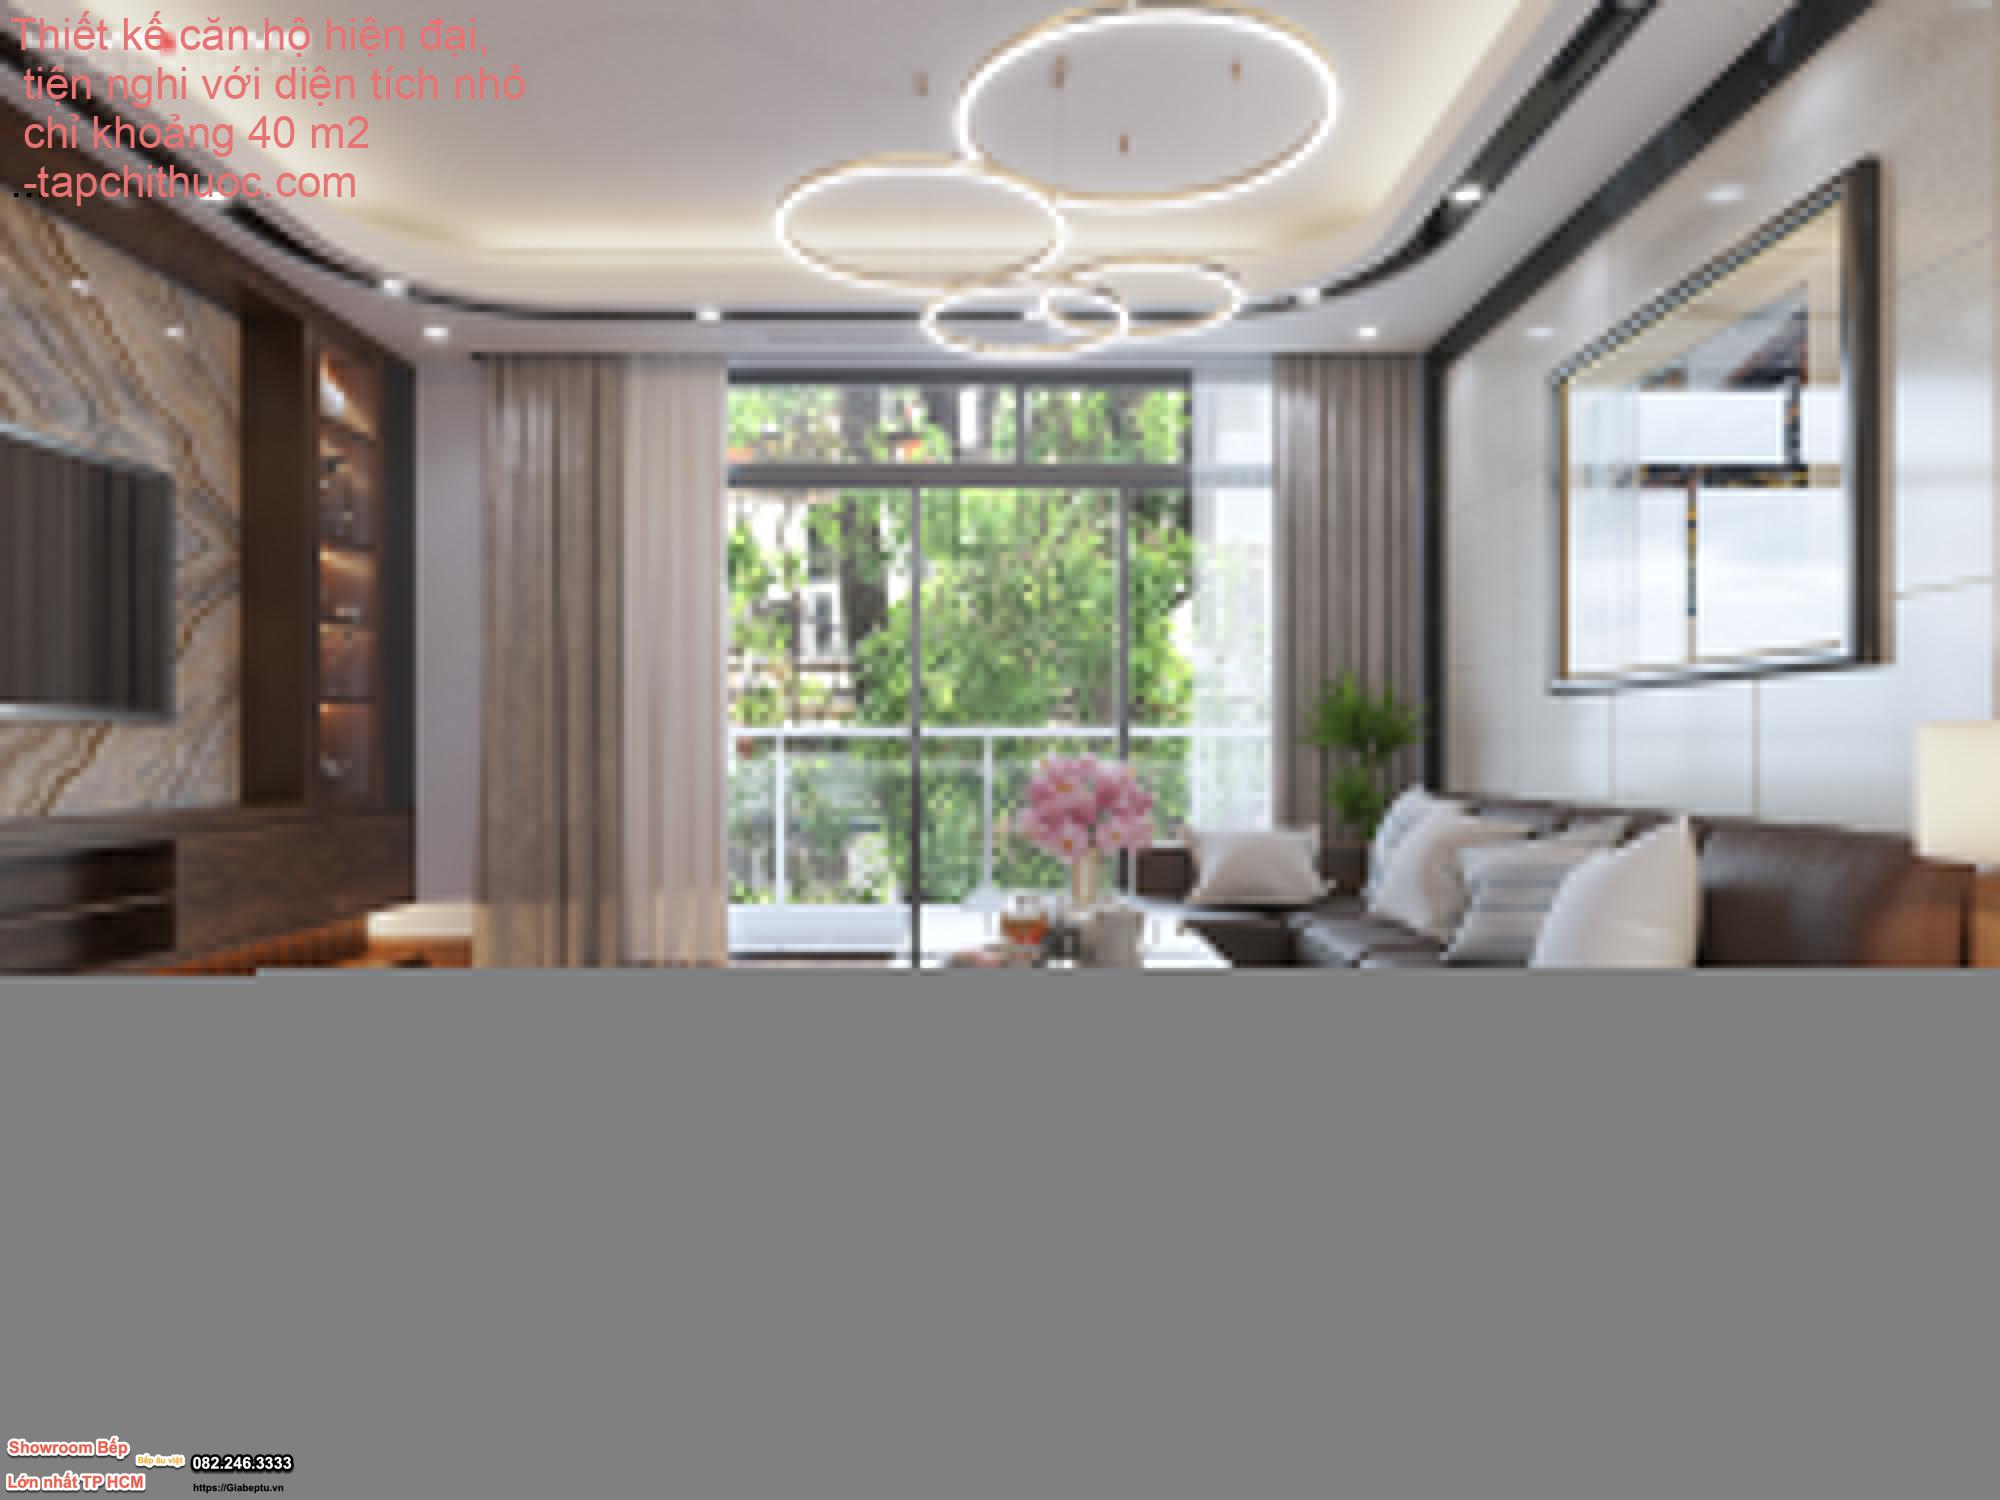 Thiết kế căn hộ hiện đại, tiện nghi với diện tích nhỏ chỉ khoảng 40 m2  